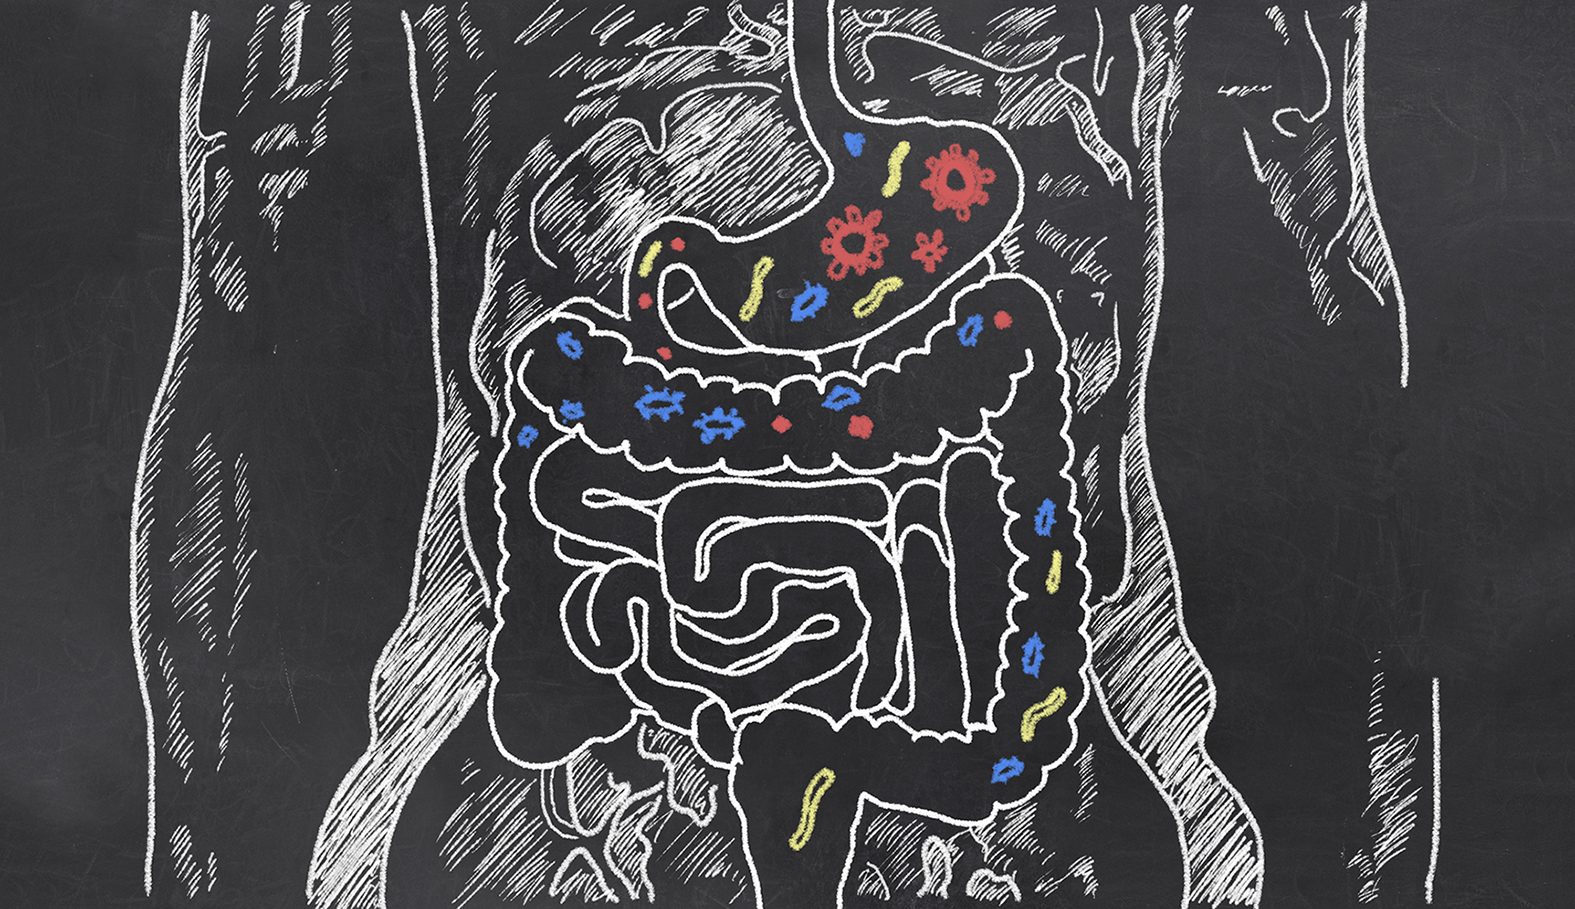 粉笔画的肠道微生物组在一个黑色背景